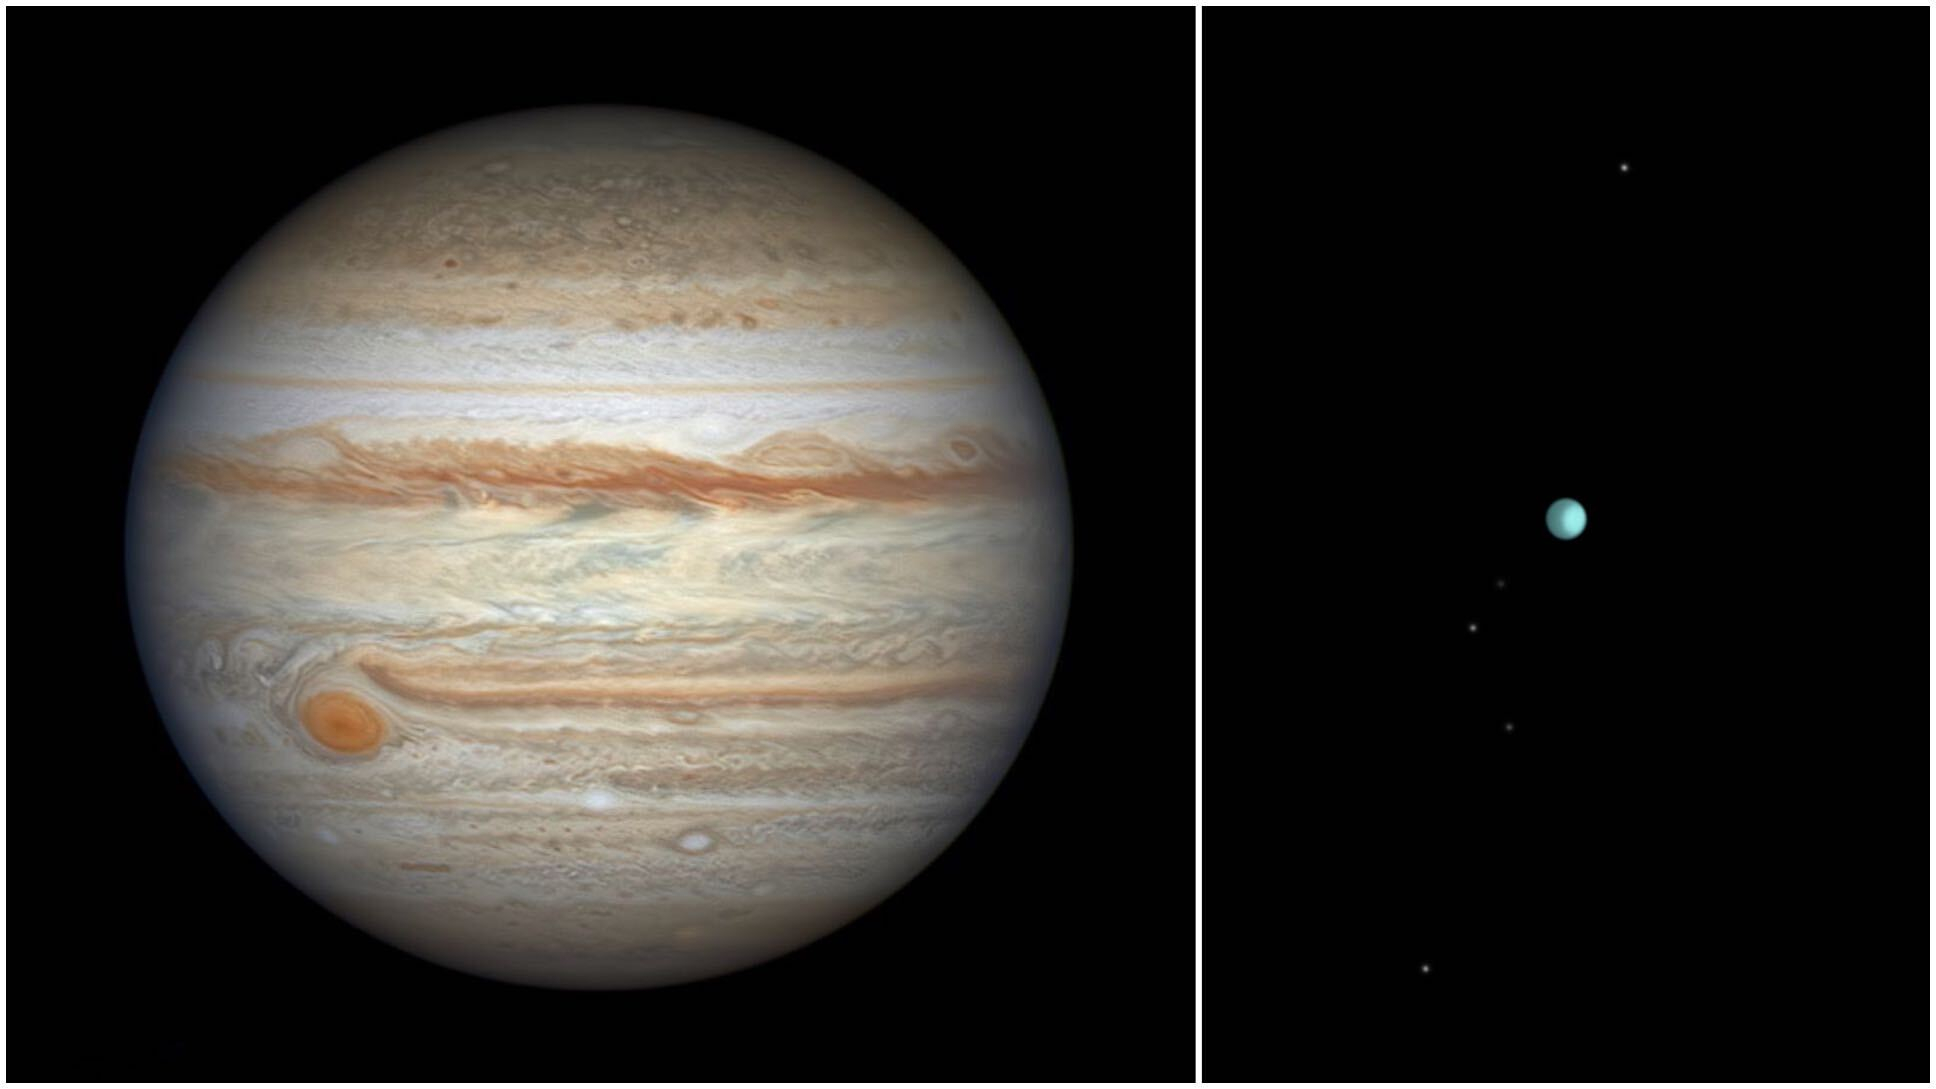 木星の写真と、5 つの小さな衛星を持つ小さな天王星の写真